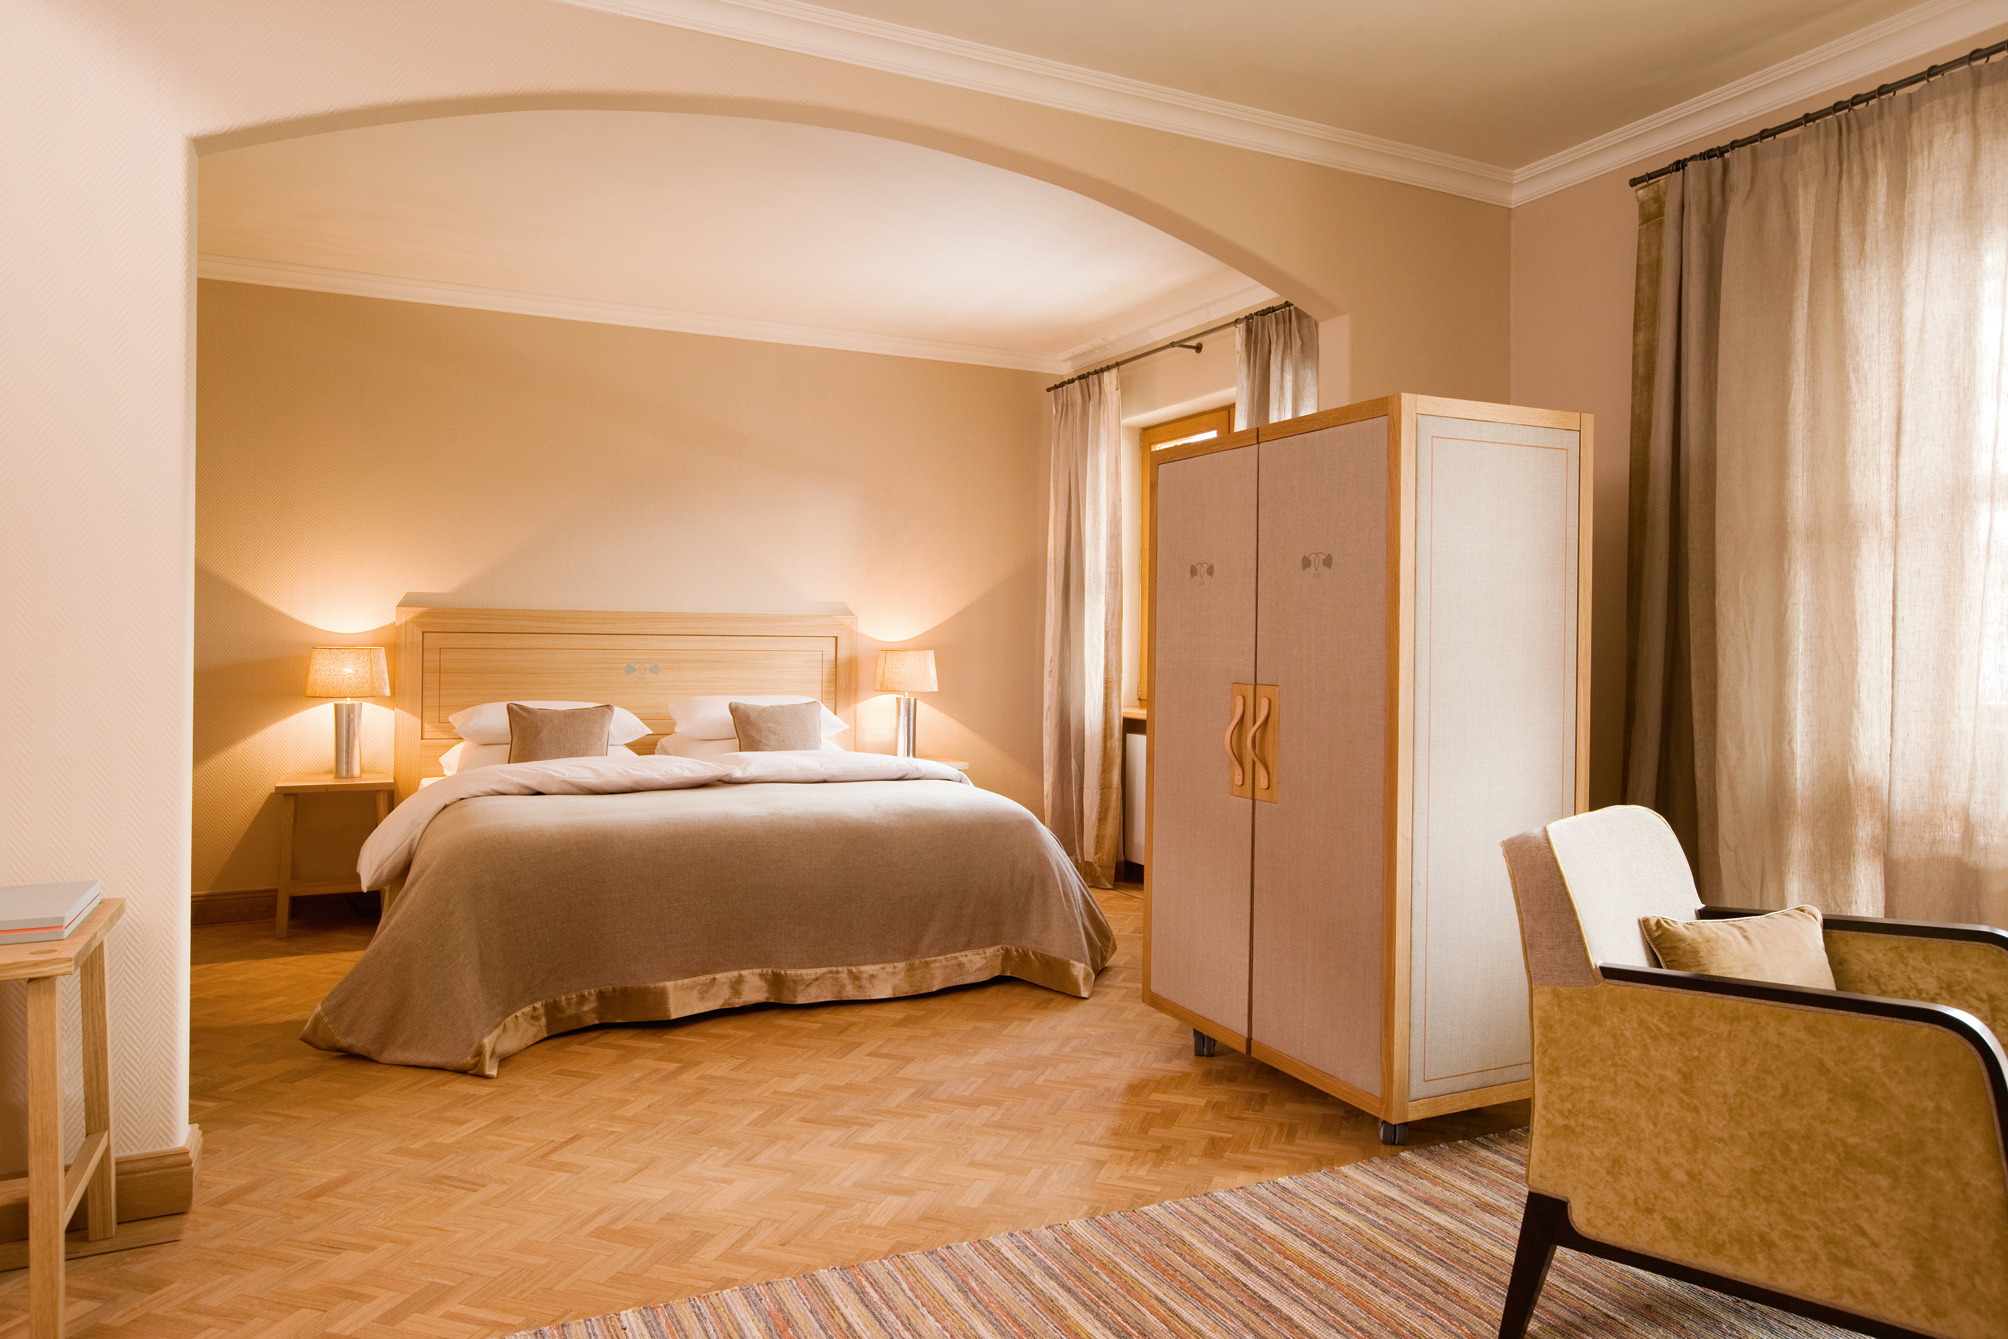 Junior-Suite im Hotel Bachmair Weissach.
